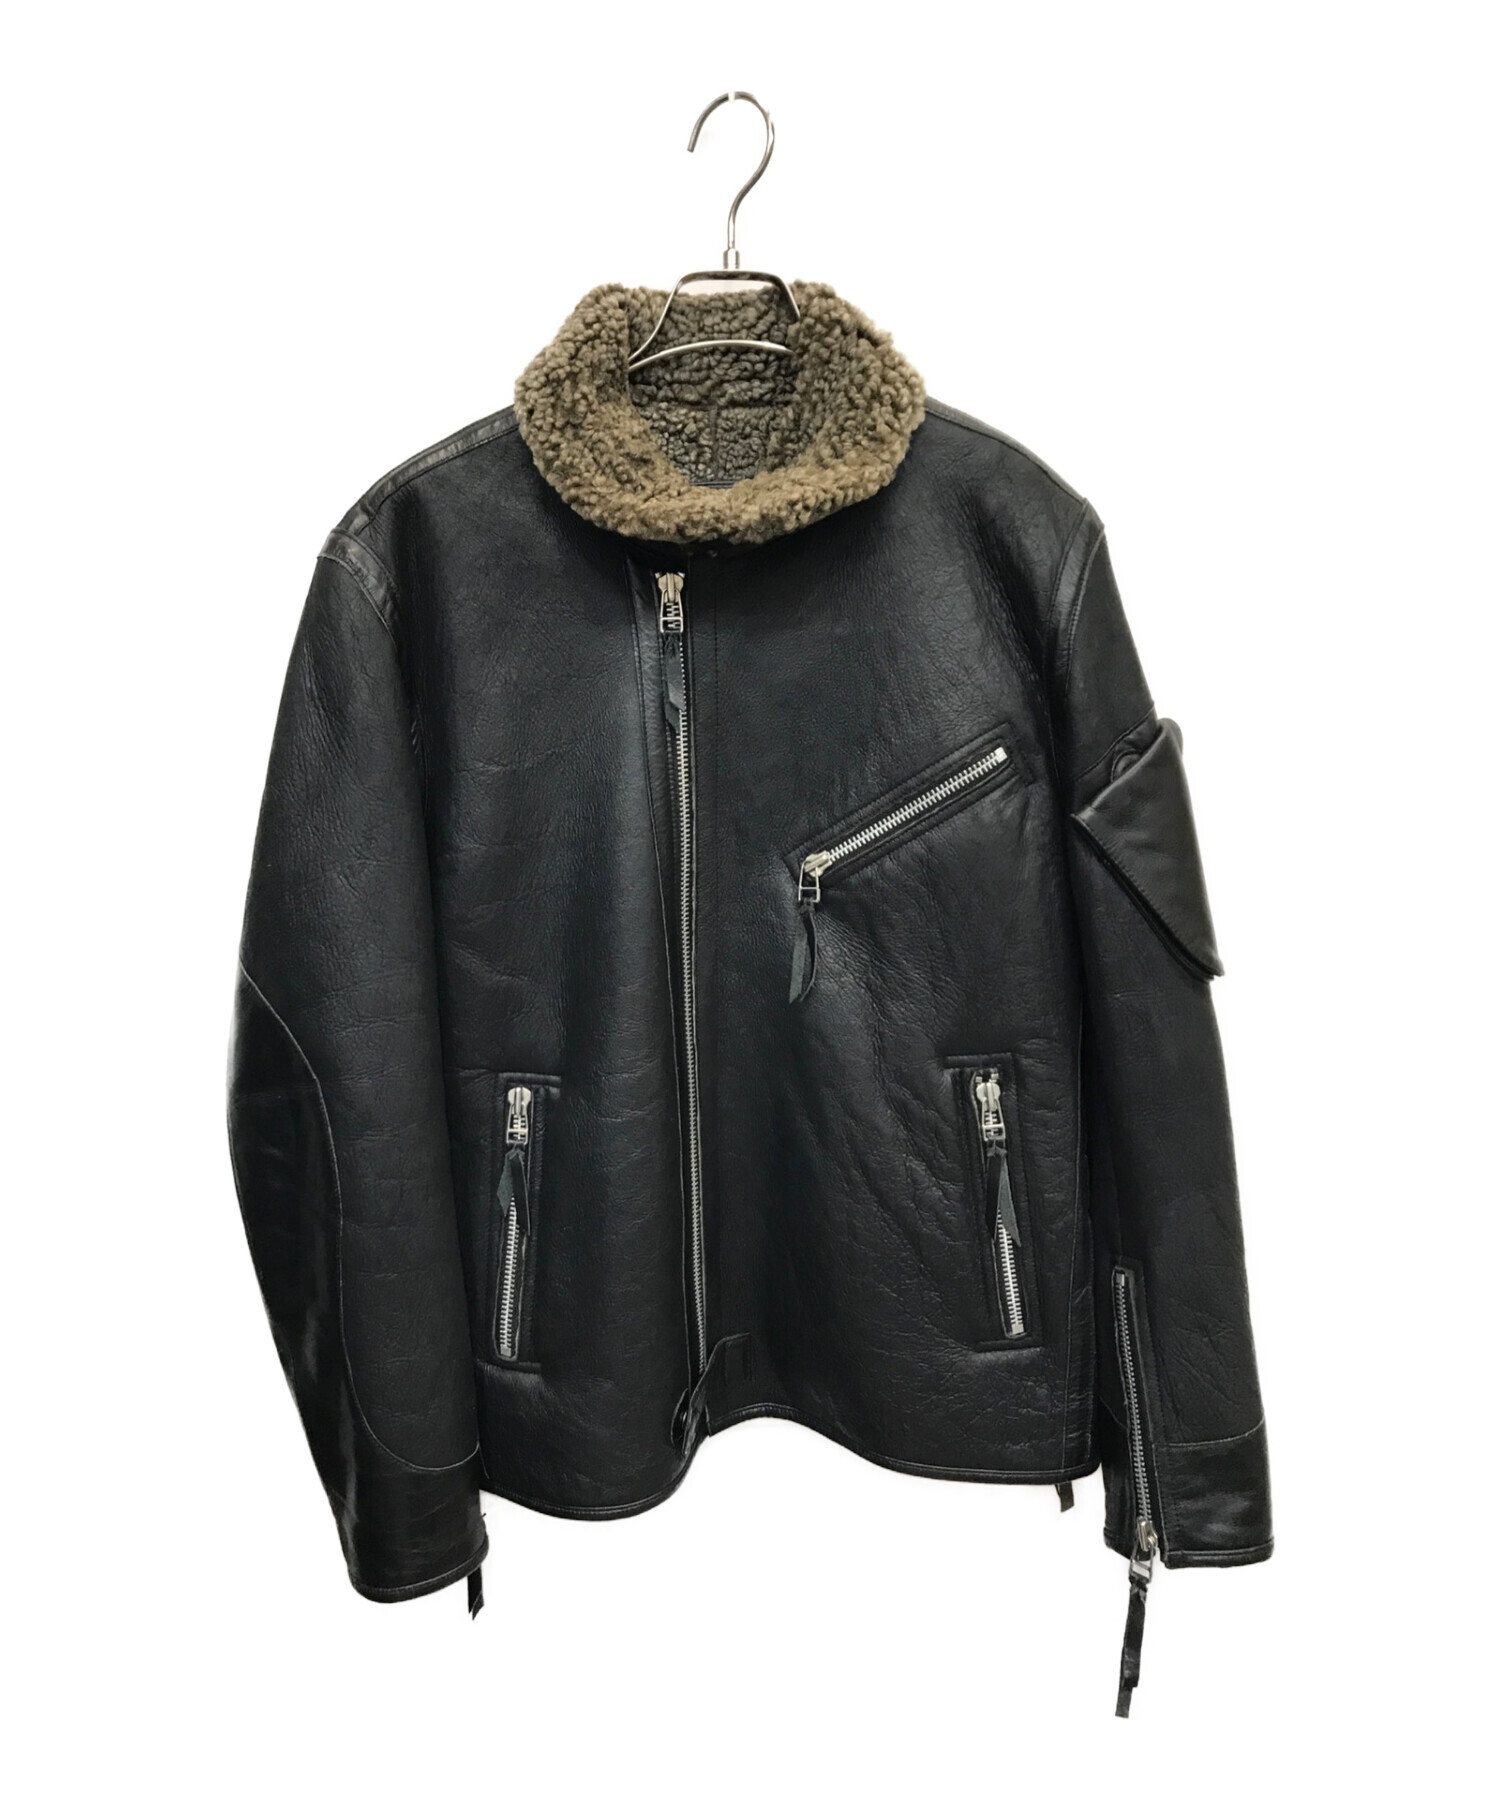 vanquish leather fur jacket 46pladaa